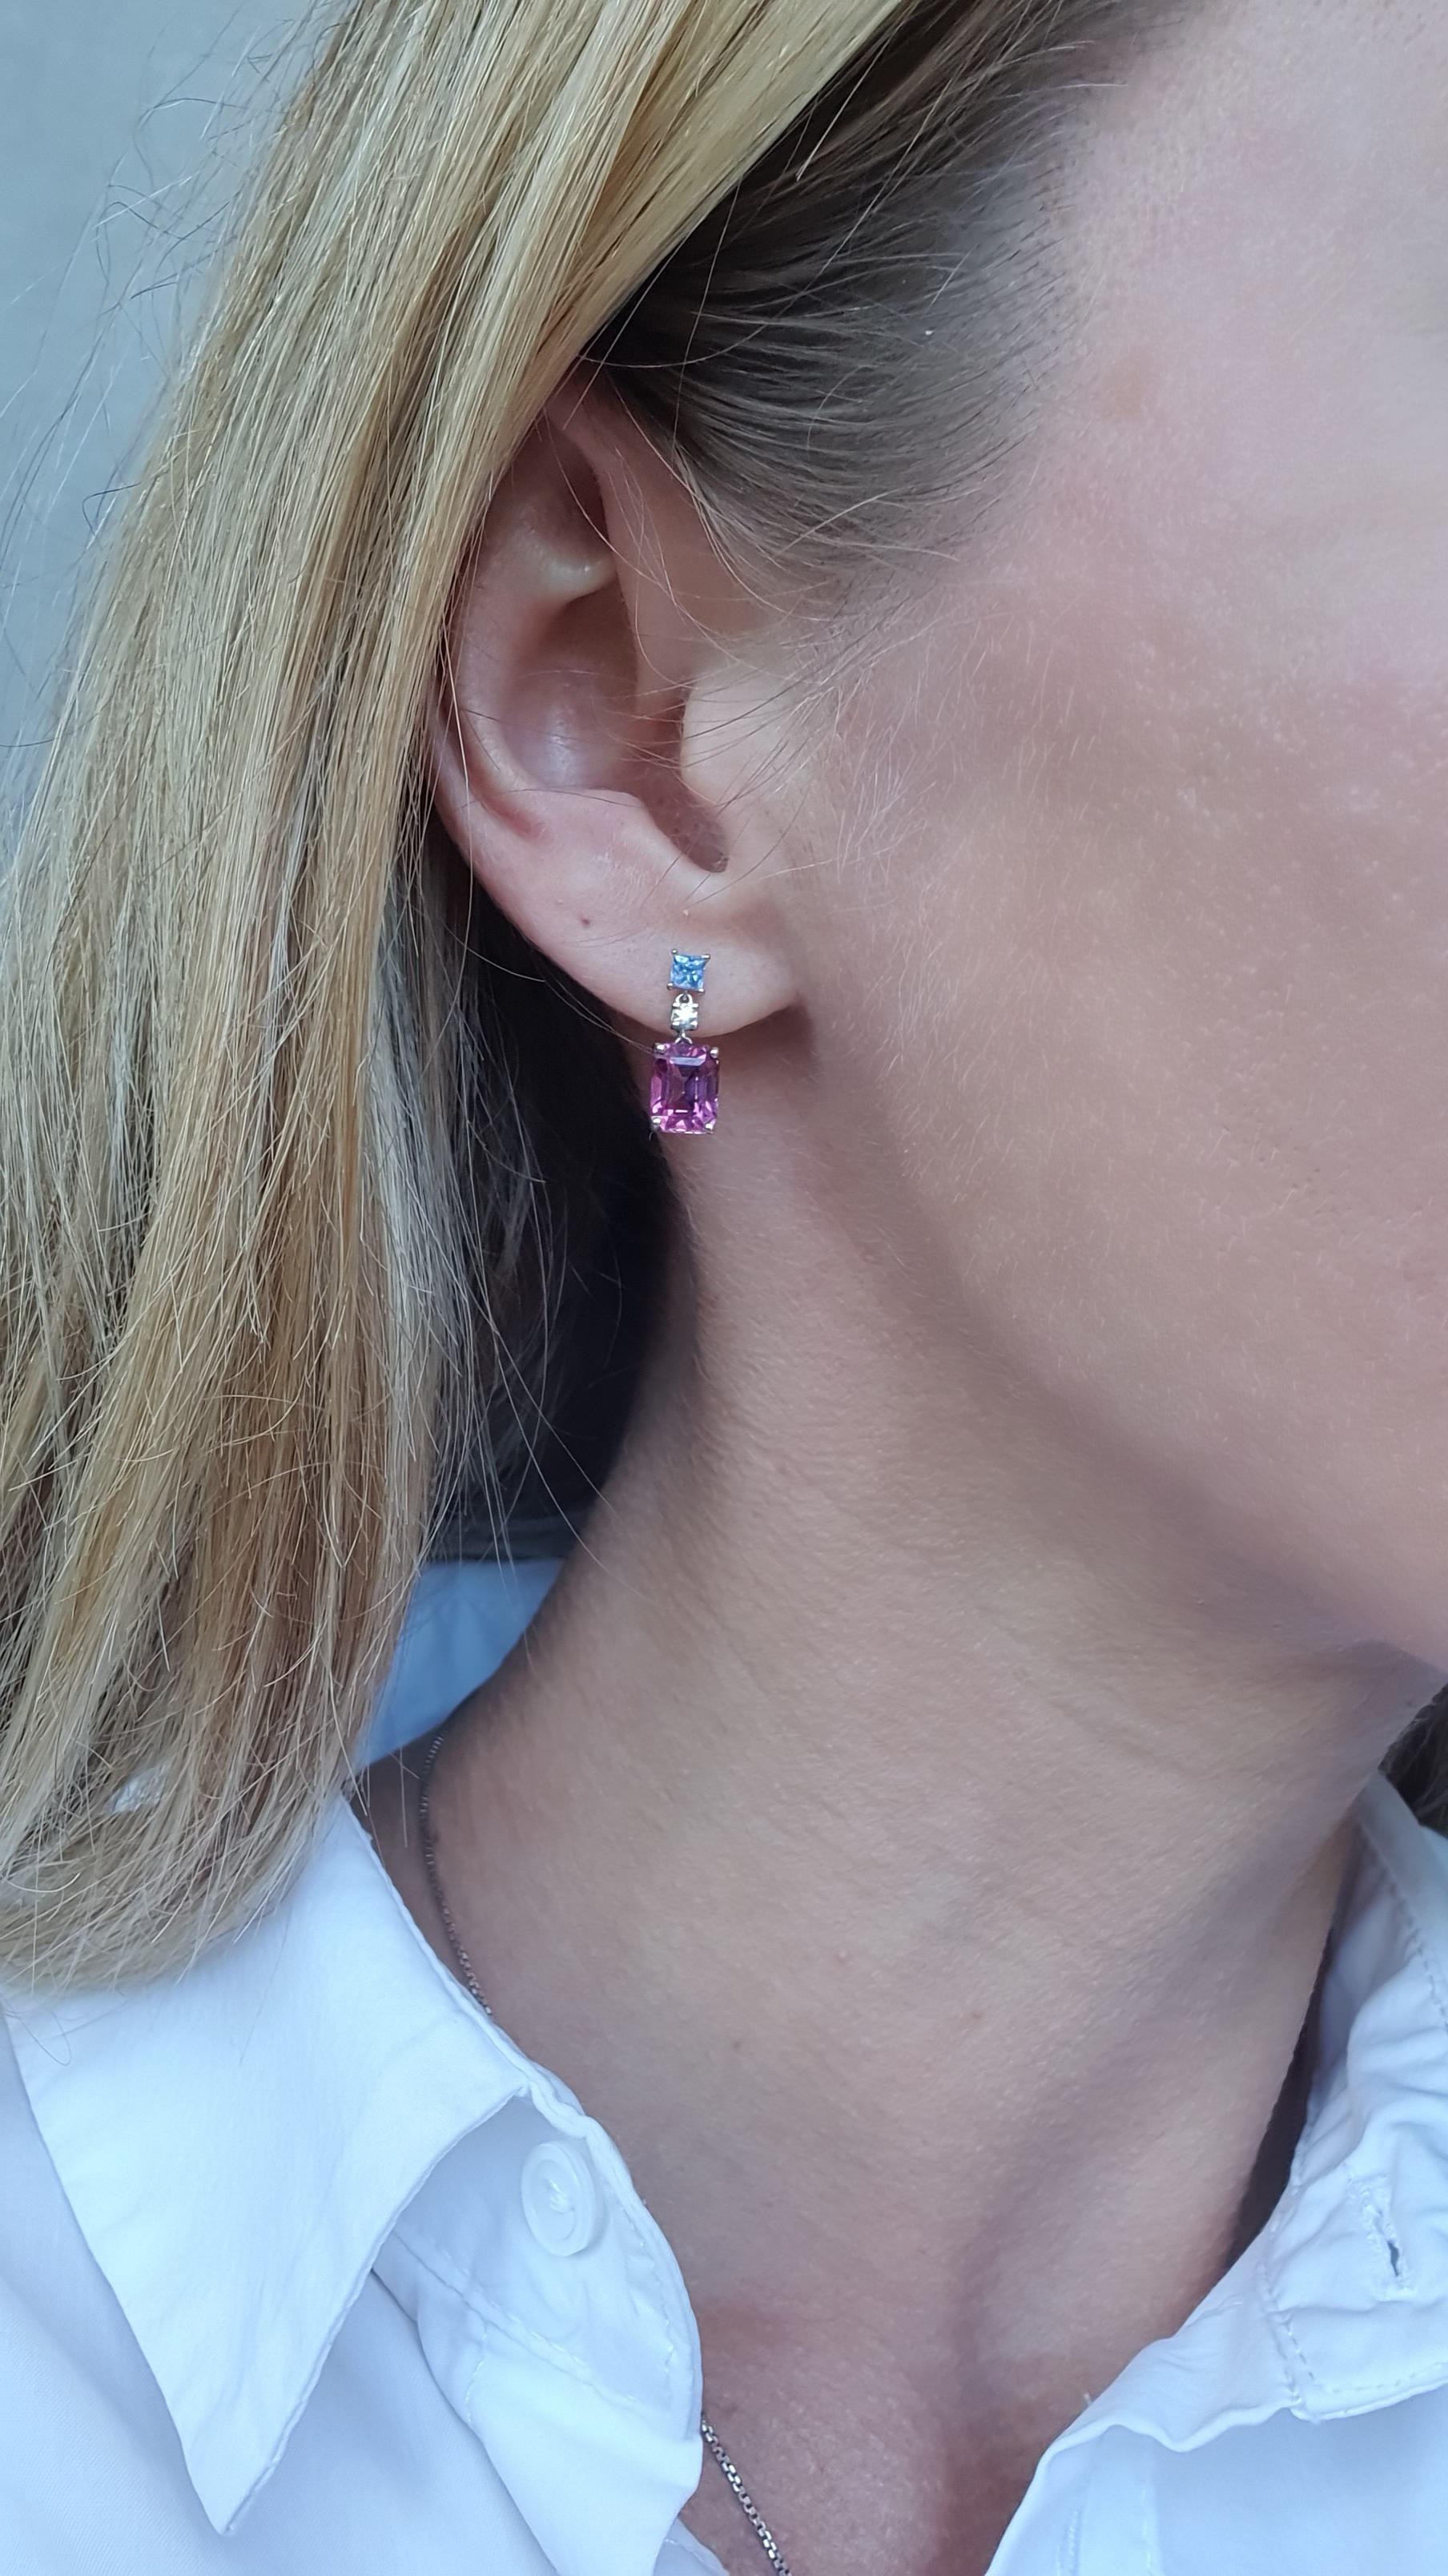  Für die elegantesten Schmucksammler hat ALPENGEM diese exquisiten Ohrringe aus Saphiren und Diamanten mit Strahlenschliff und lilafarbenen Granaten mit Scherenschliff kreiert.

Diese Edelsteine in einem satten, kalten Farbton sind aus 18-karätigem